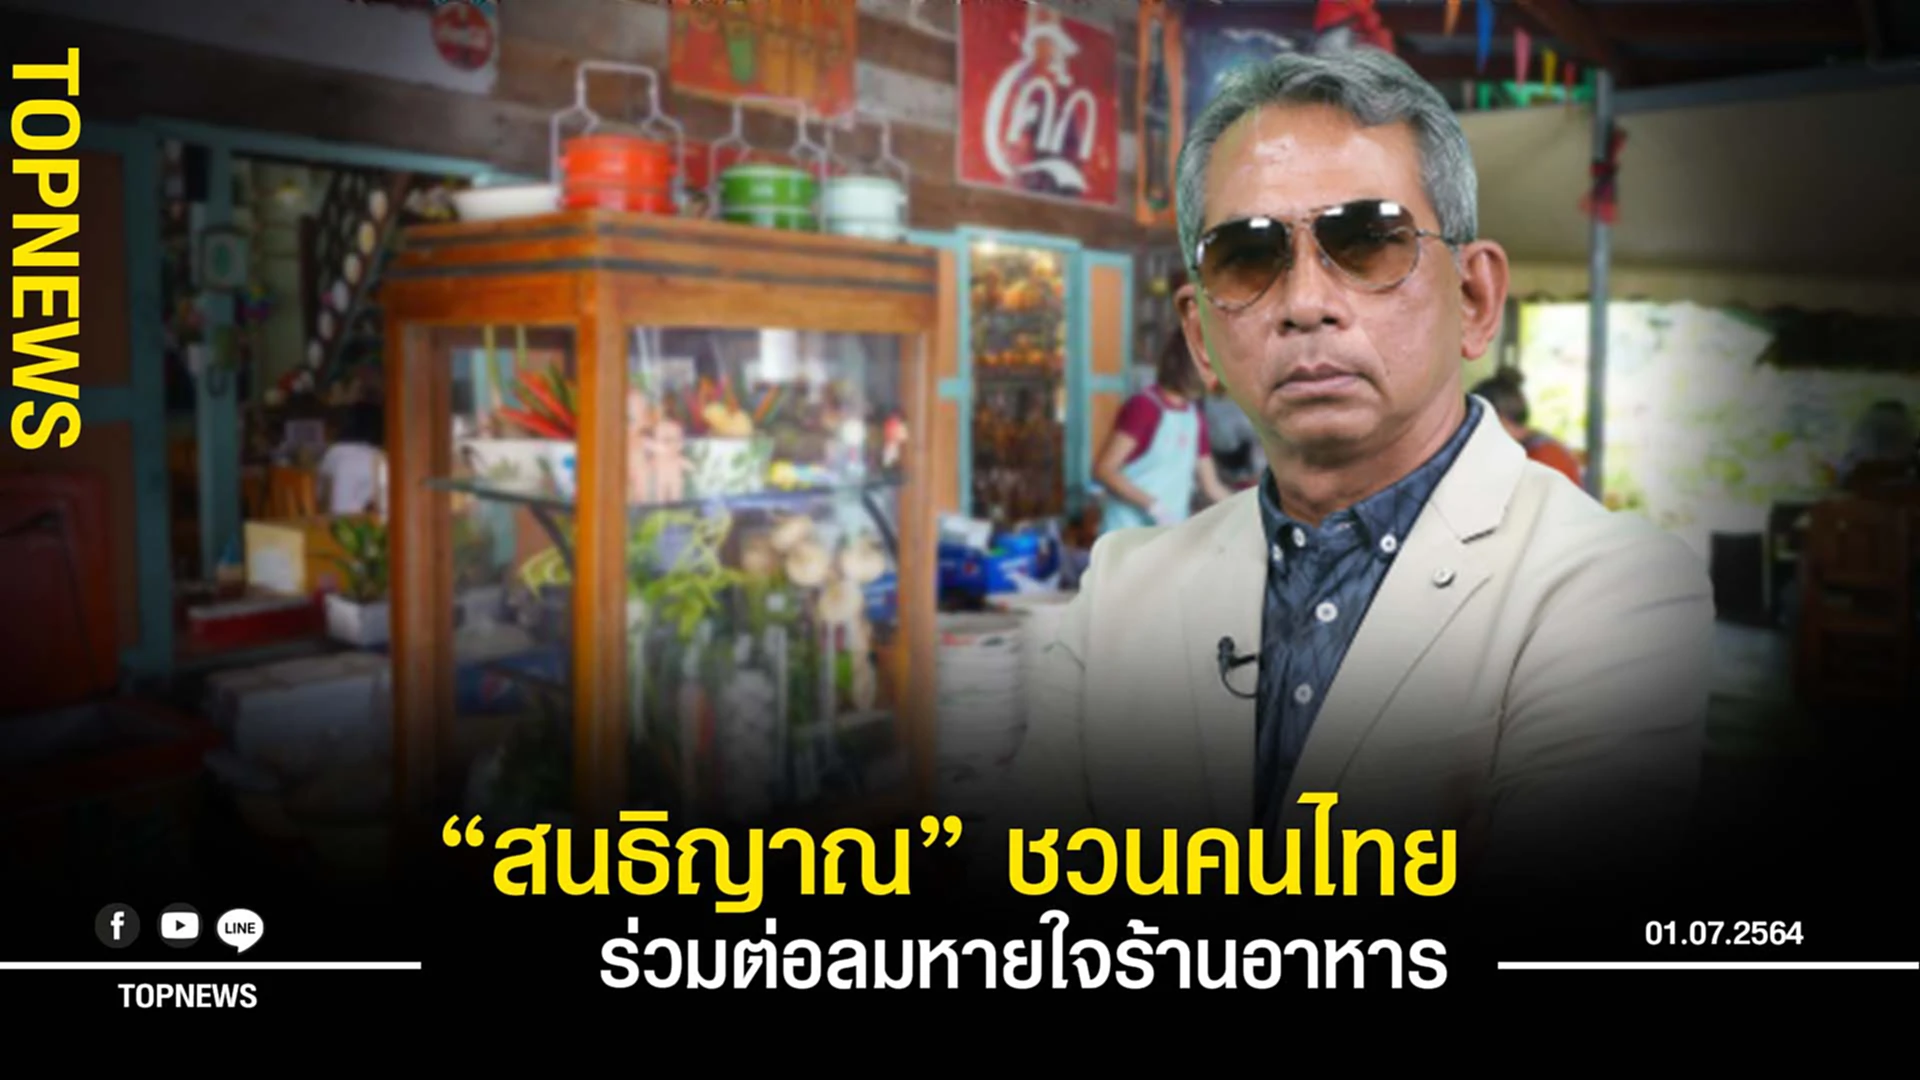 “สนธิญาณ” ชวนคนไทย ร่วมต่อลมหายใจร้านอาหาร สู่นักรบชุดขาว